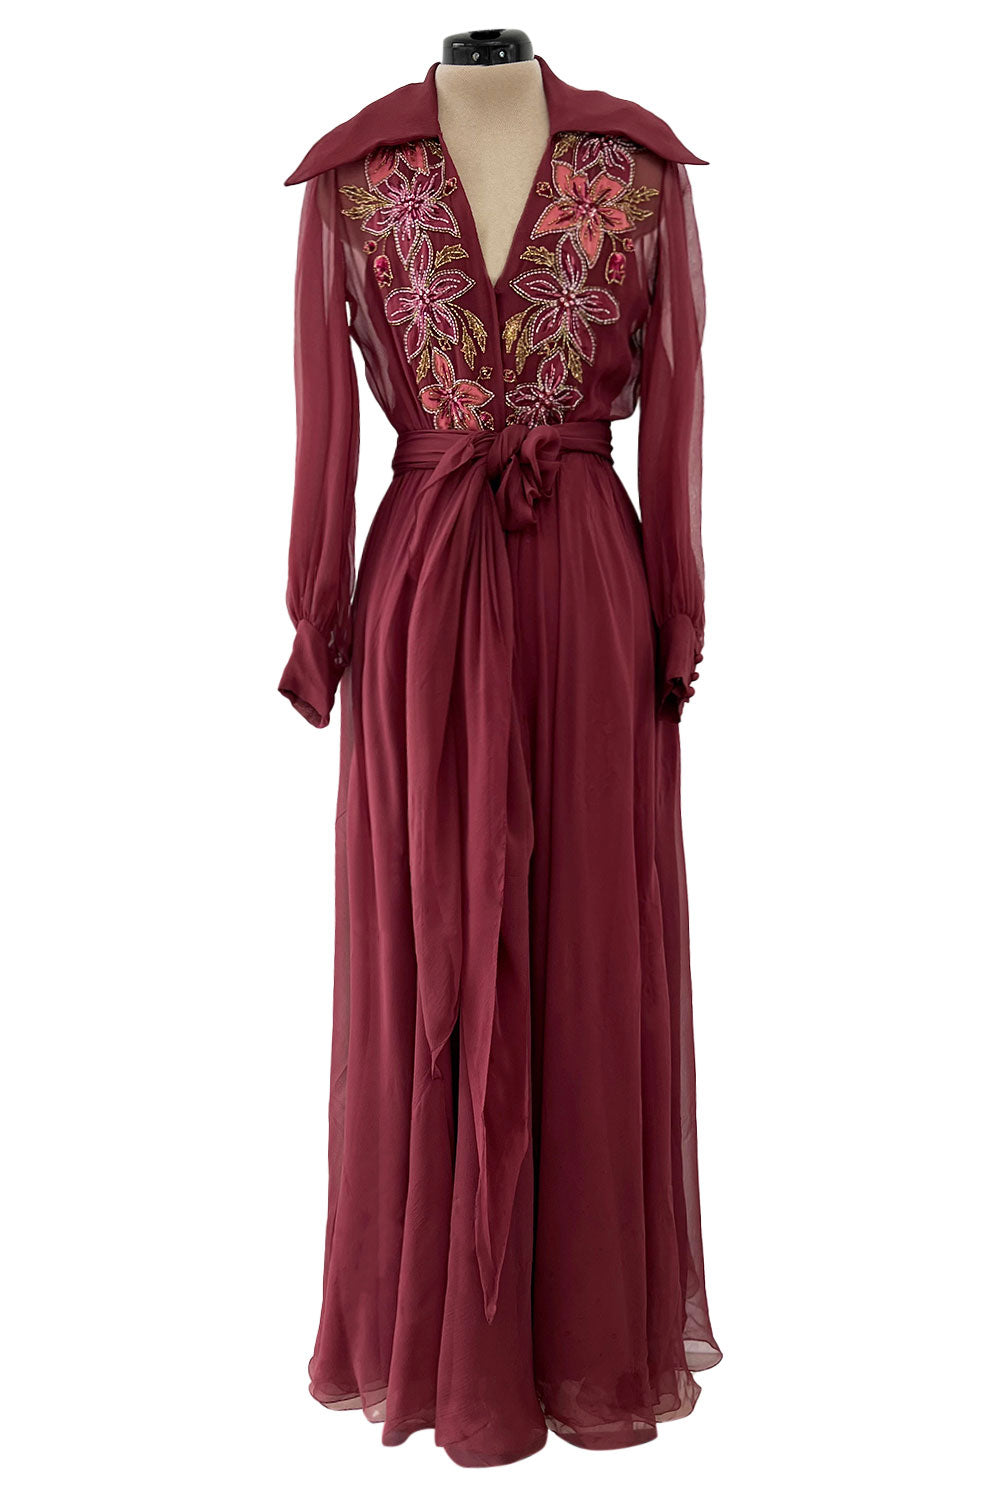 Stunning Original 1970s Jean-louis Scherrer Dress Silk Poet 